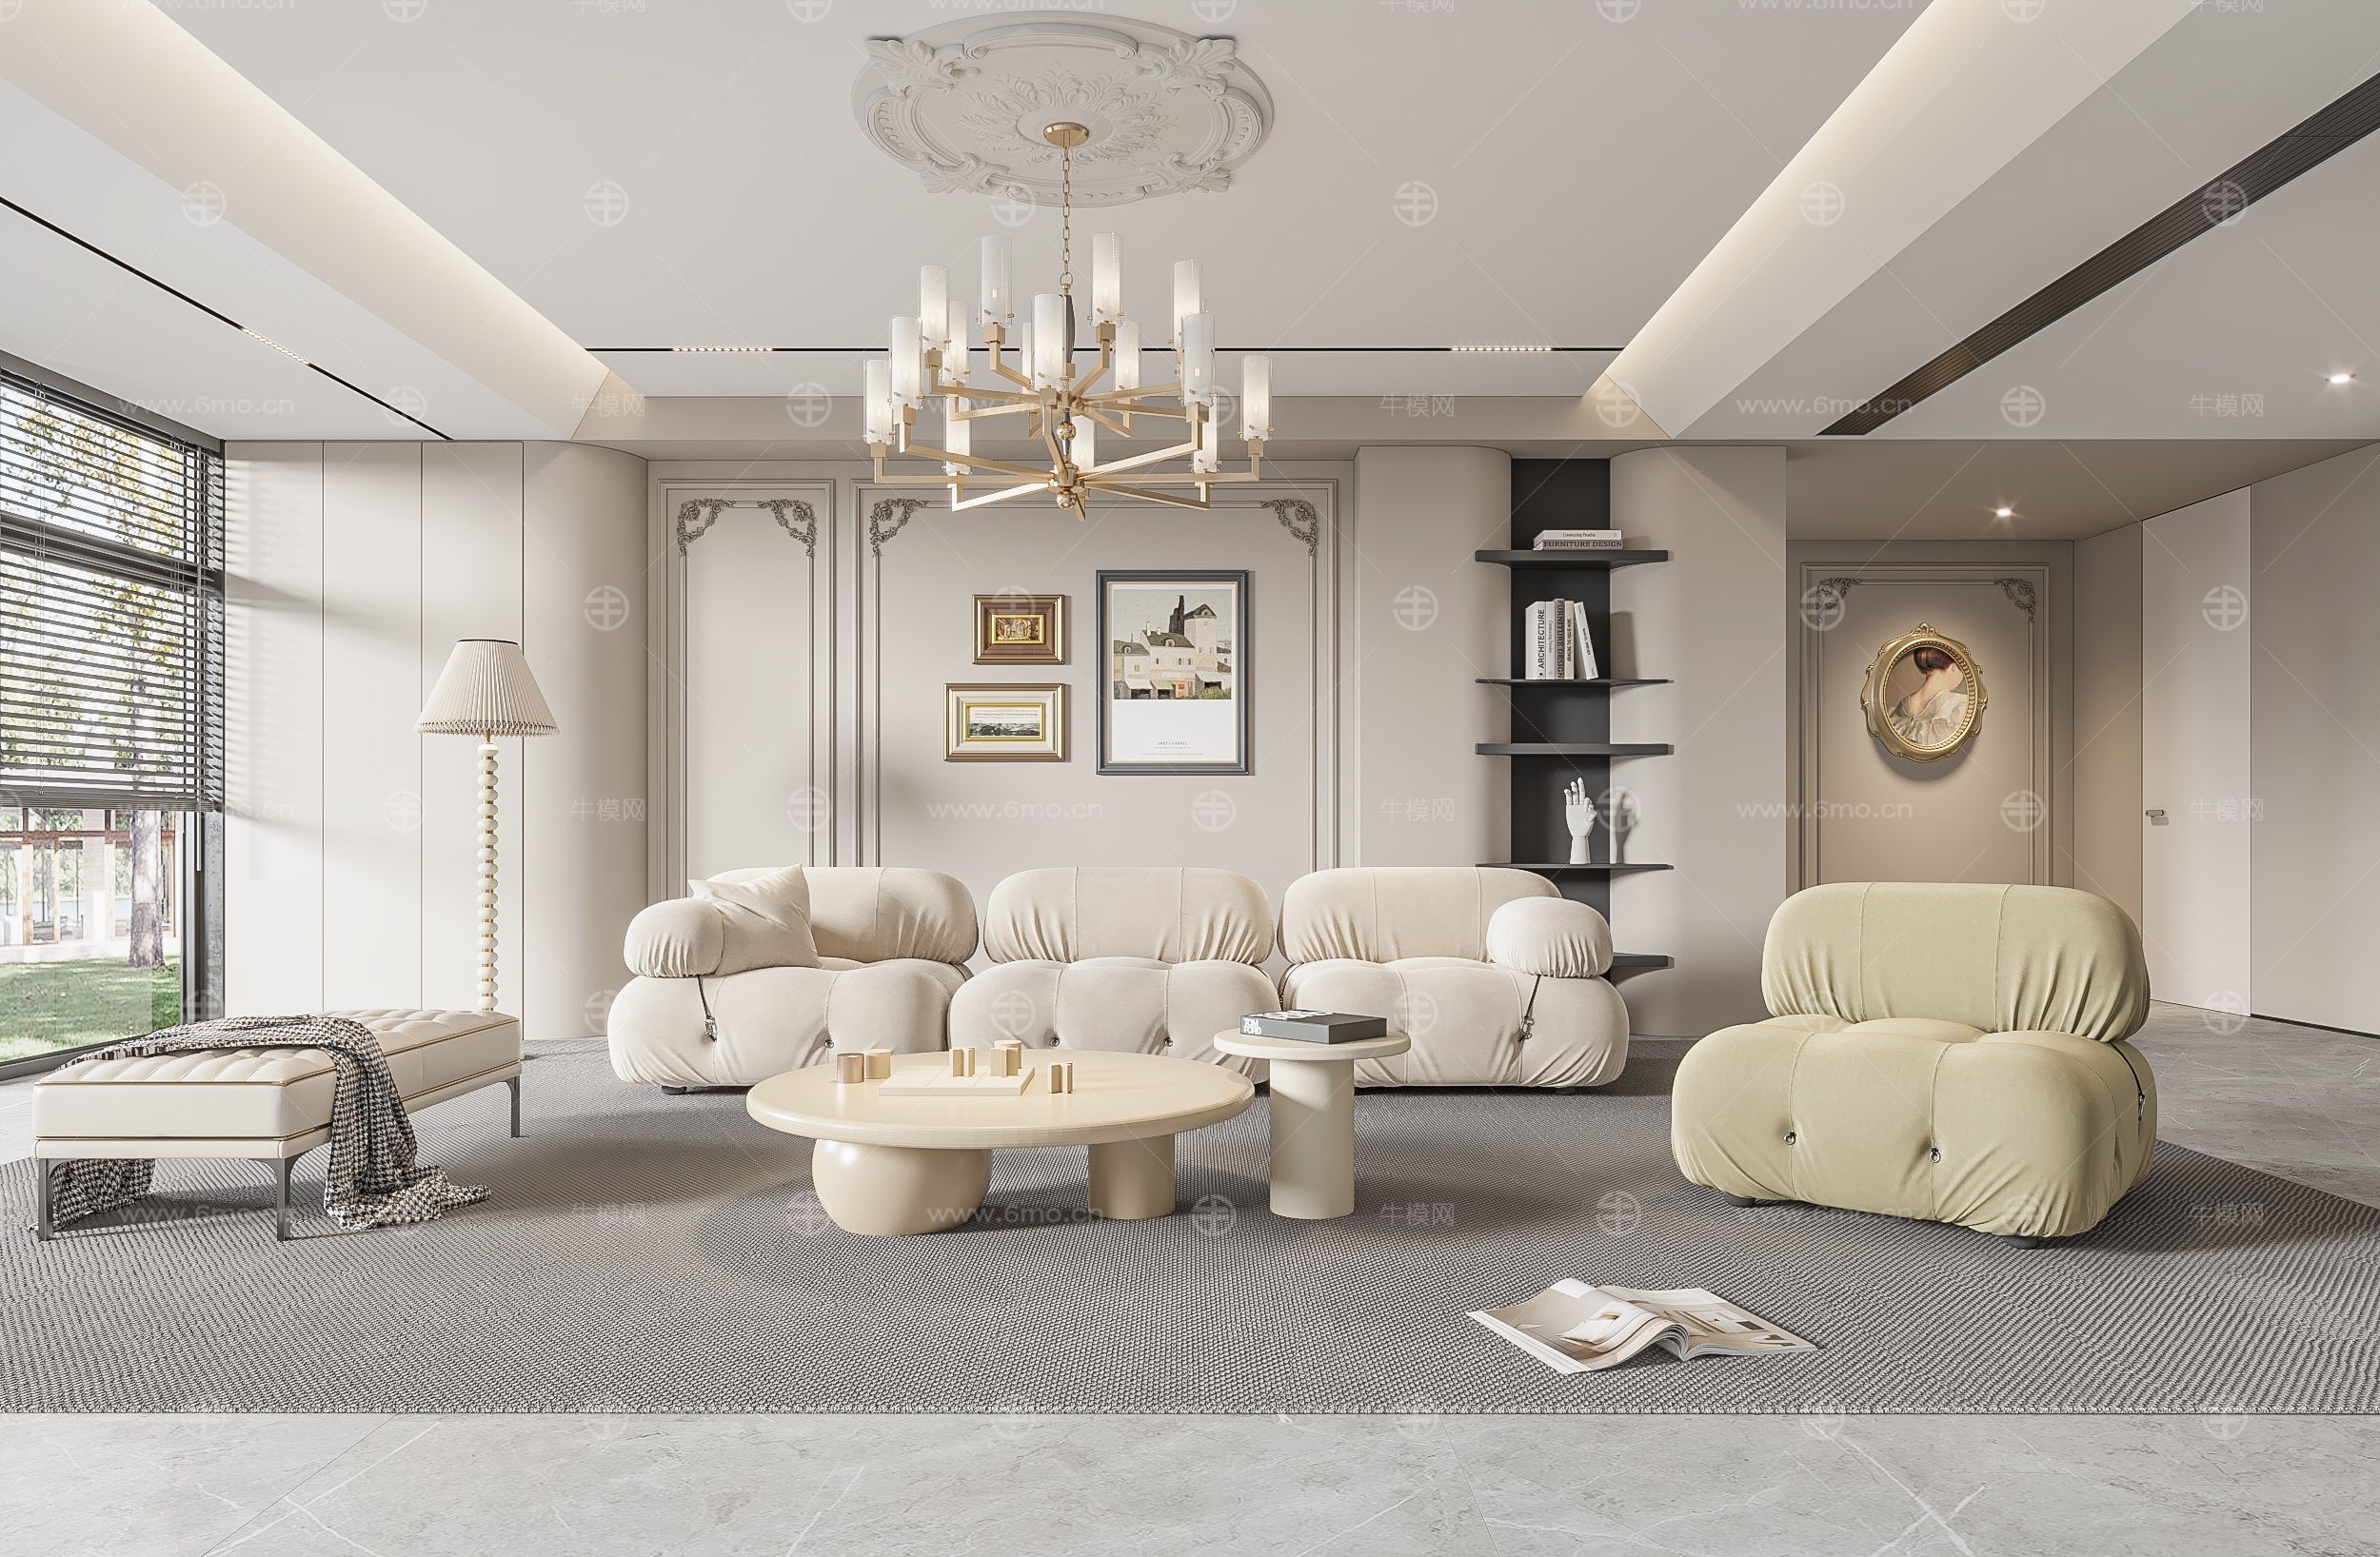 法式客厅 奶油风客厅 沙发组合 茶几组合 饰品摆件 PU线条